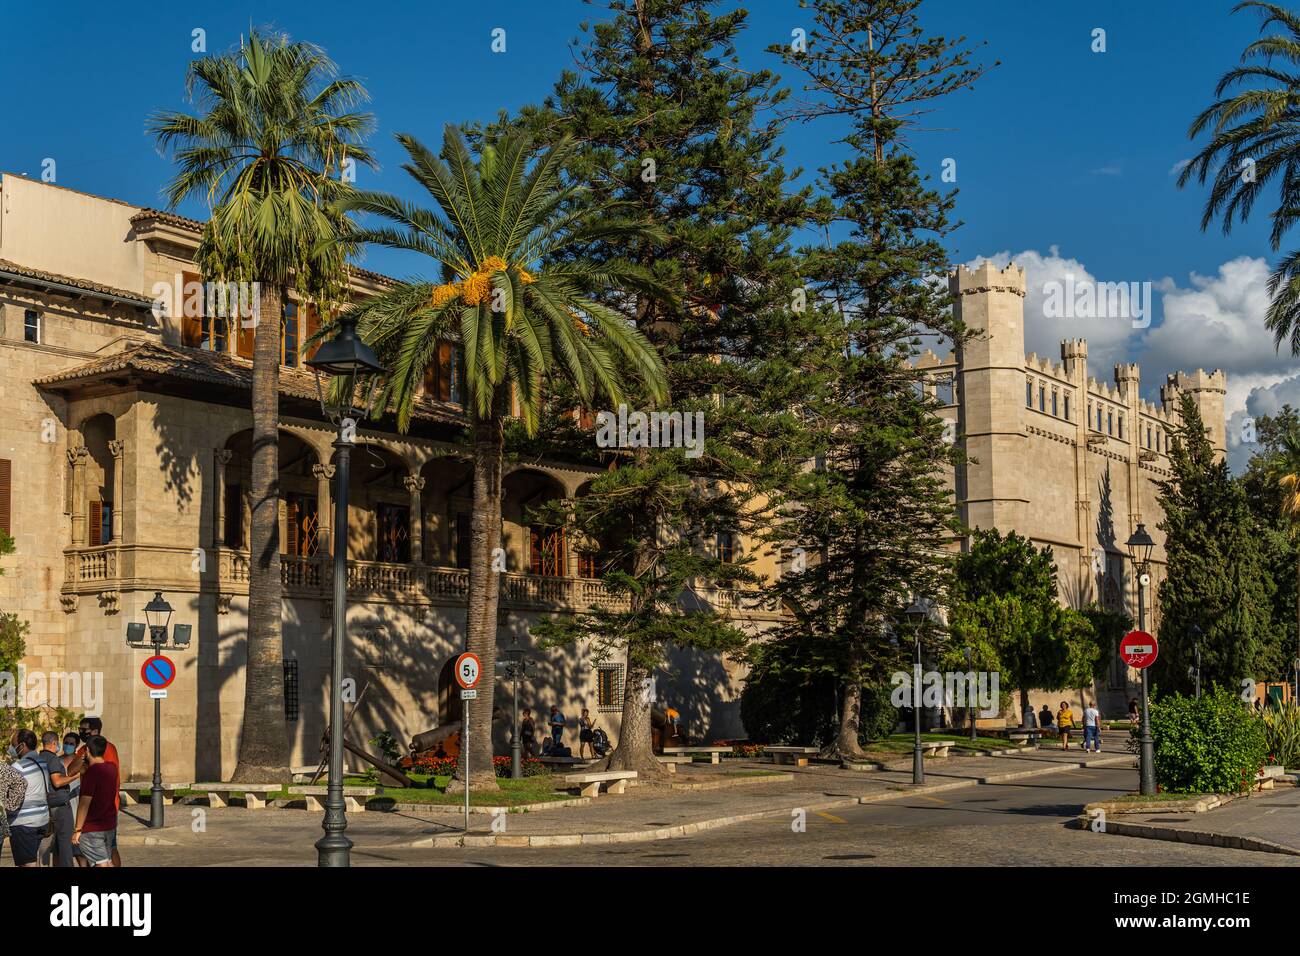 Palma de Mallorca, Spanien; september 10 2021: Gesamtansicht des öffentlichen Gebäudes El Consolat de Mar, Sitz der balearischen Regierung, neben dem Goth Stockfoto